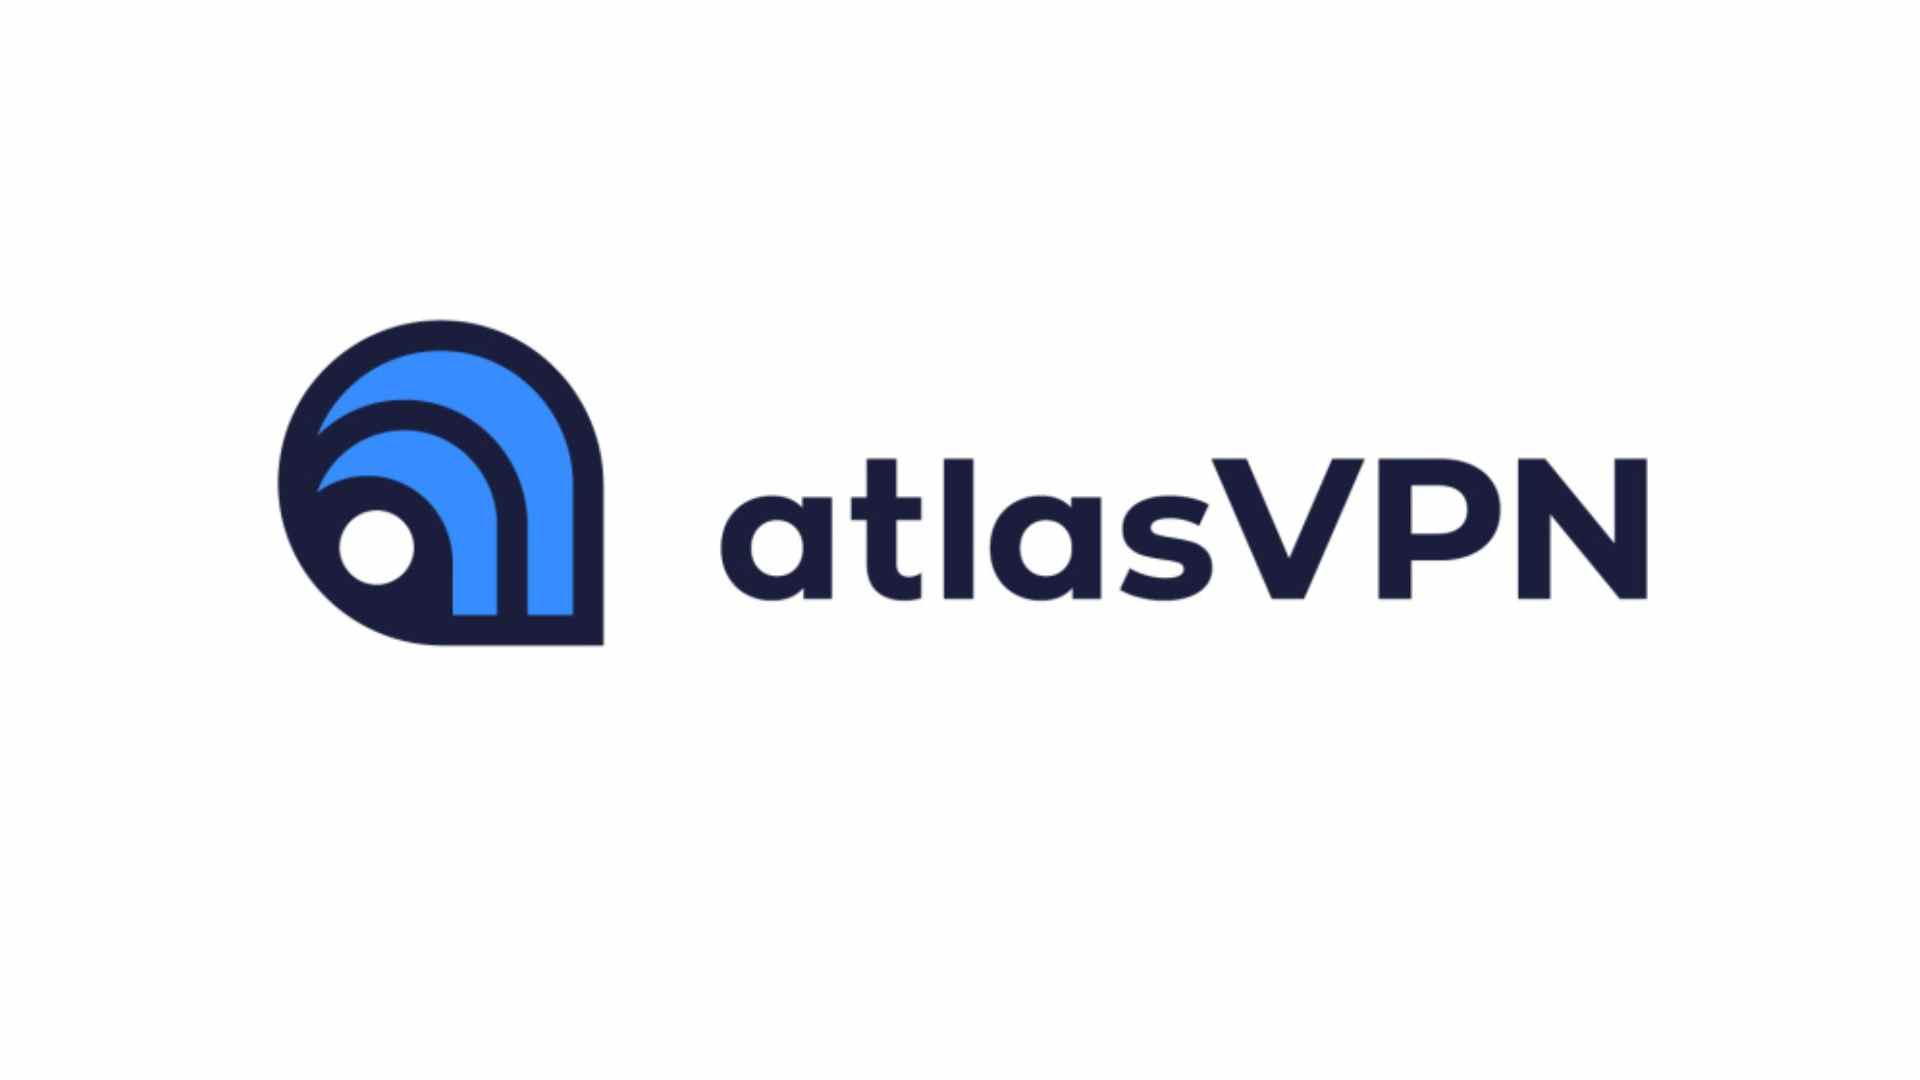 Meilleur VPN Windows 10 - AtlasVPN.  L'image montre son logo sur un fond blanc.